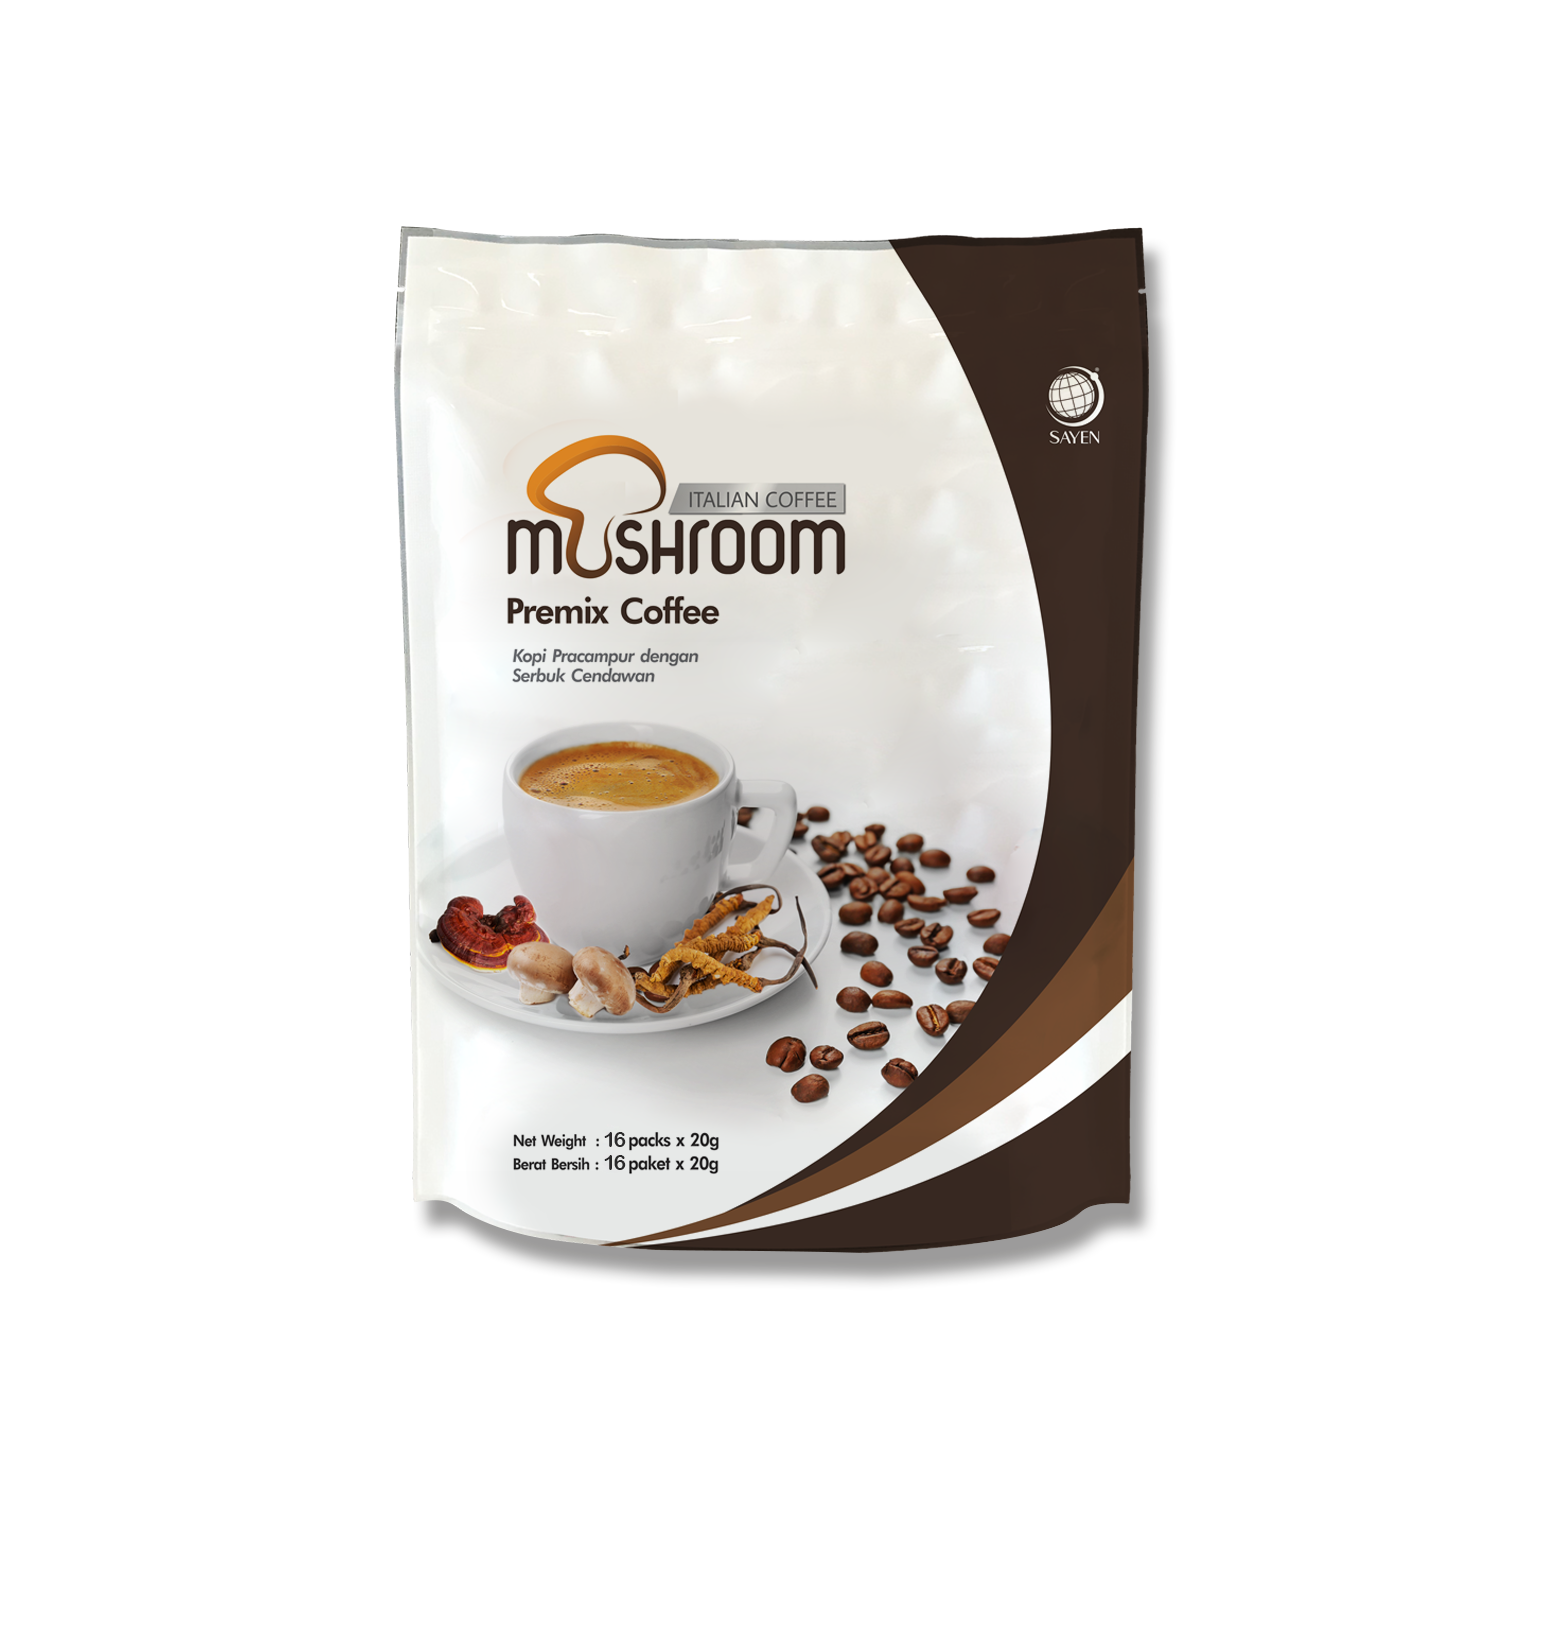 Mushroom Italian Coffee